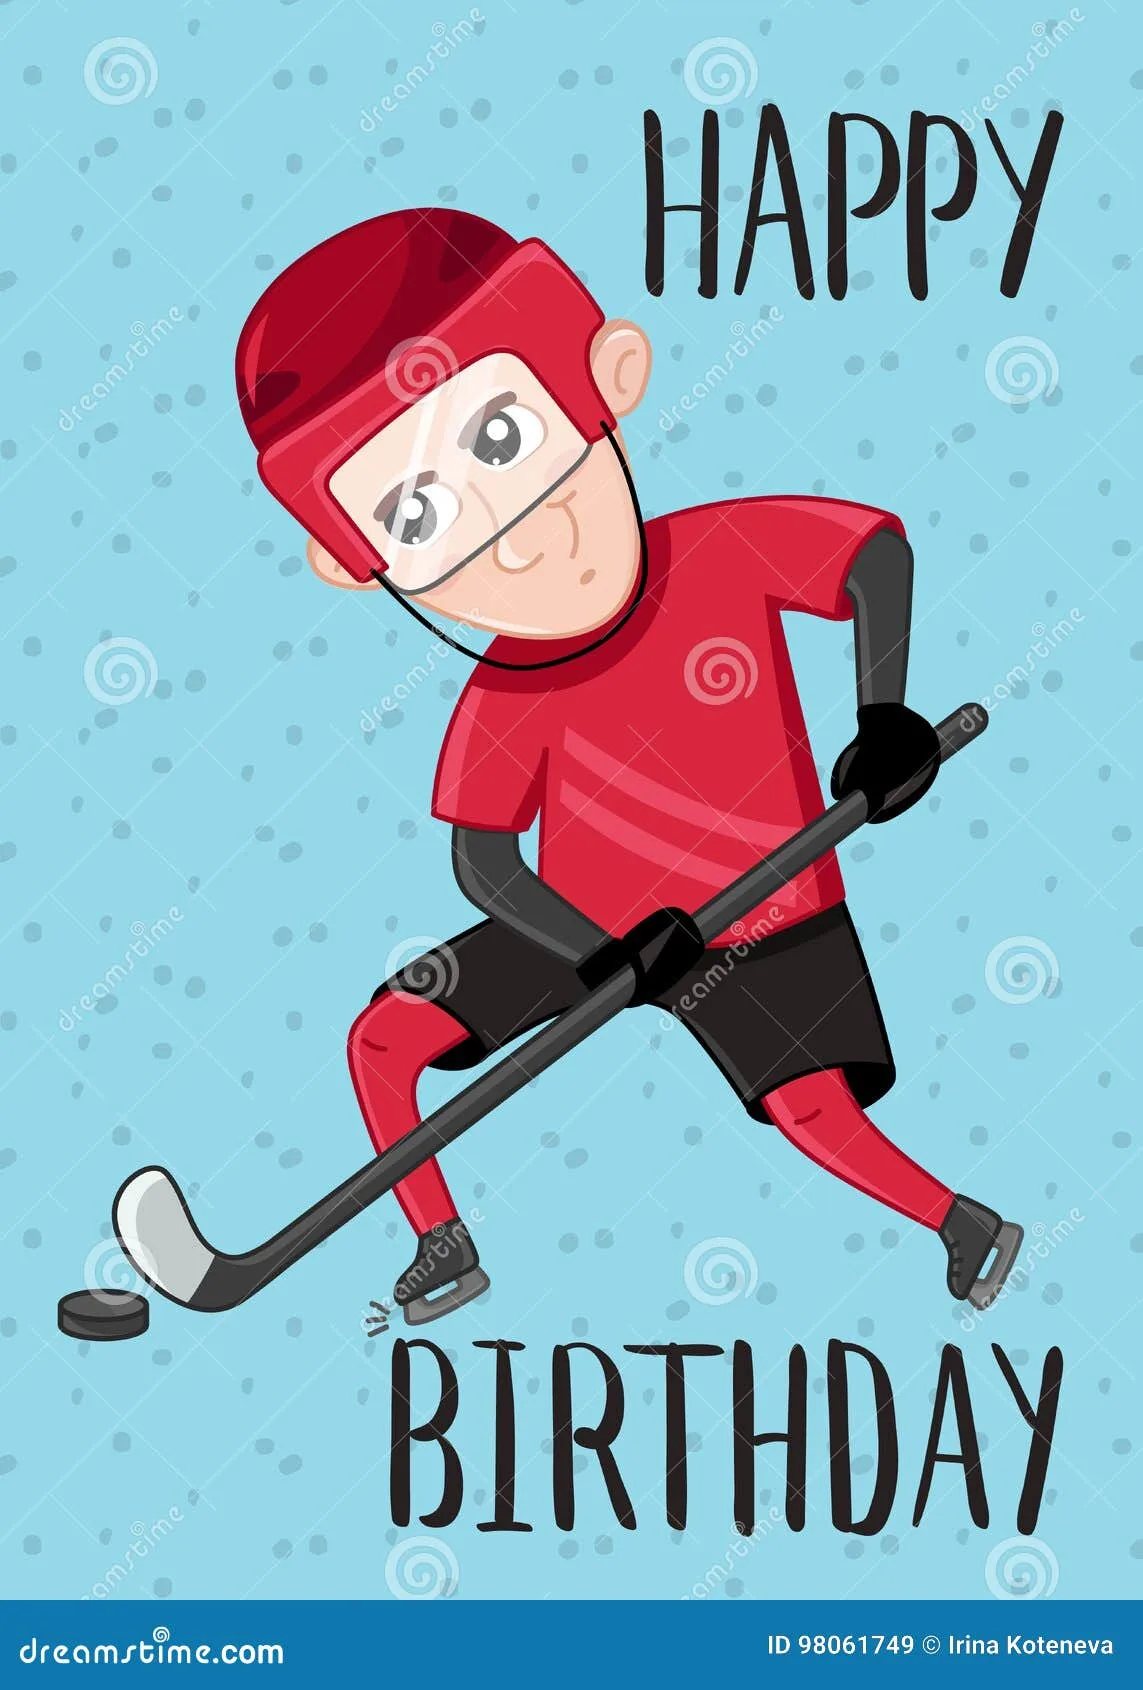 Фото Поздравление с днем рождения хоккеисту #13